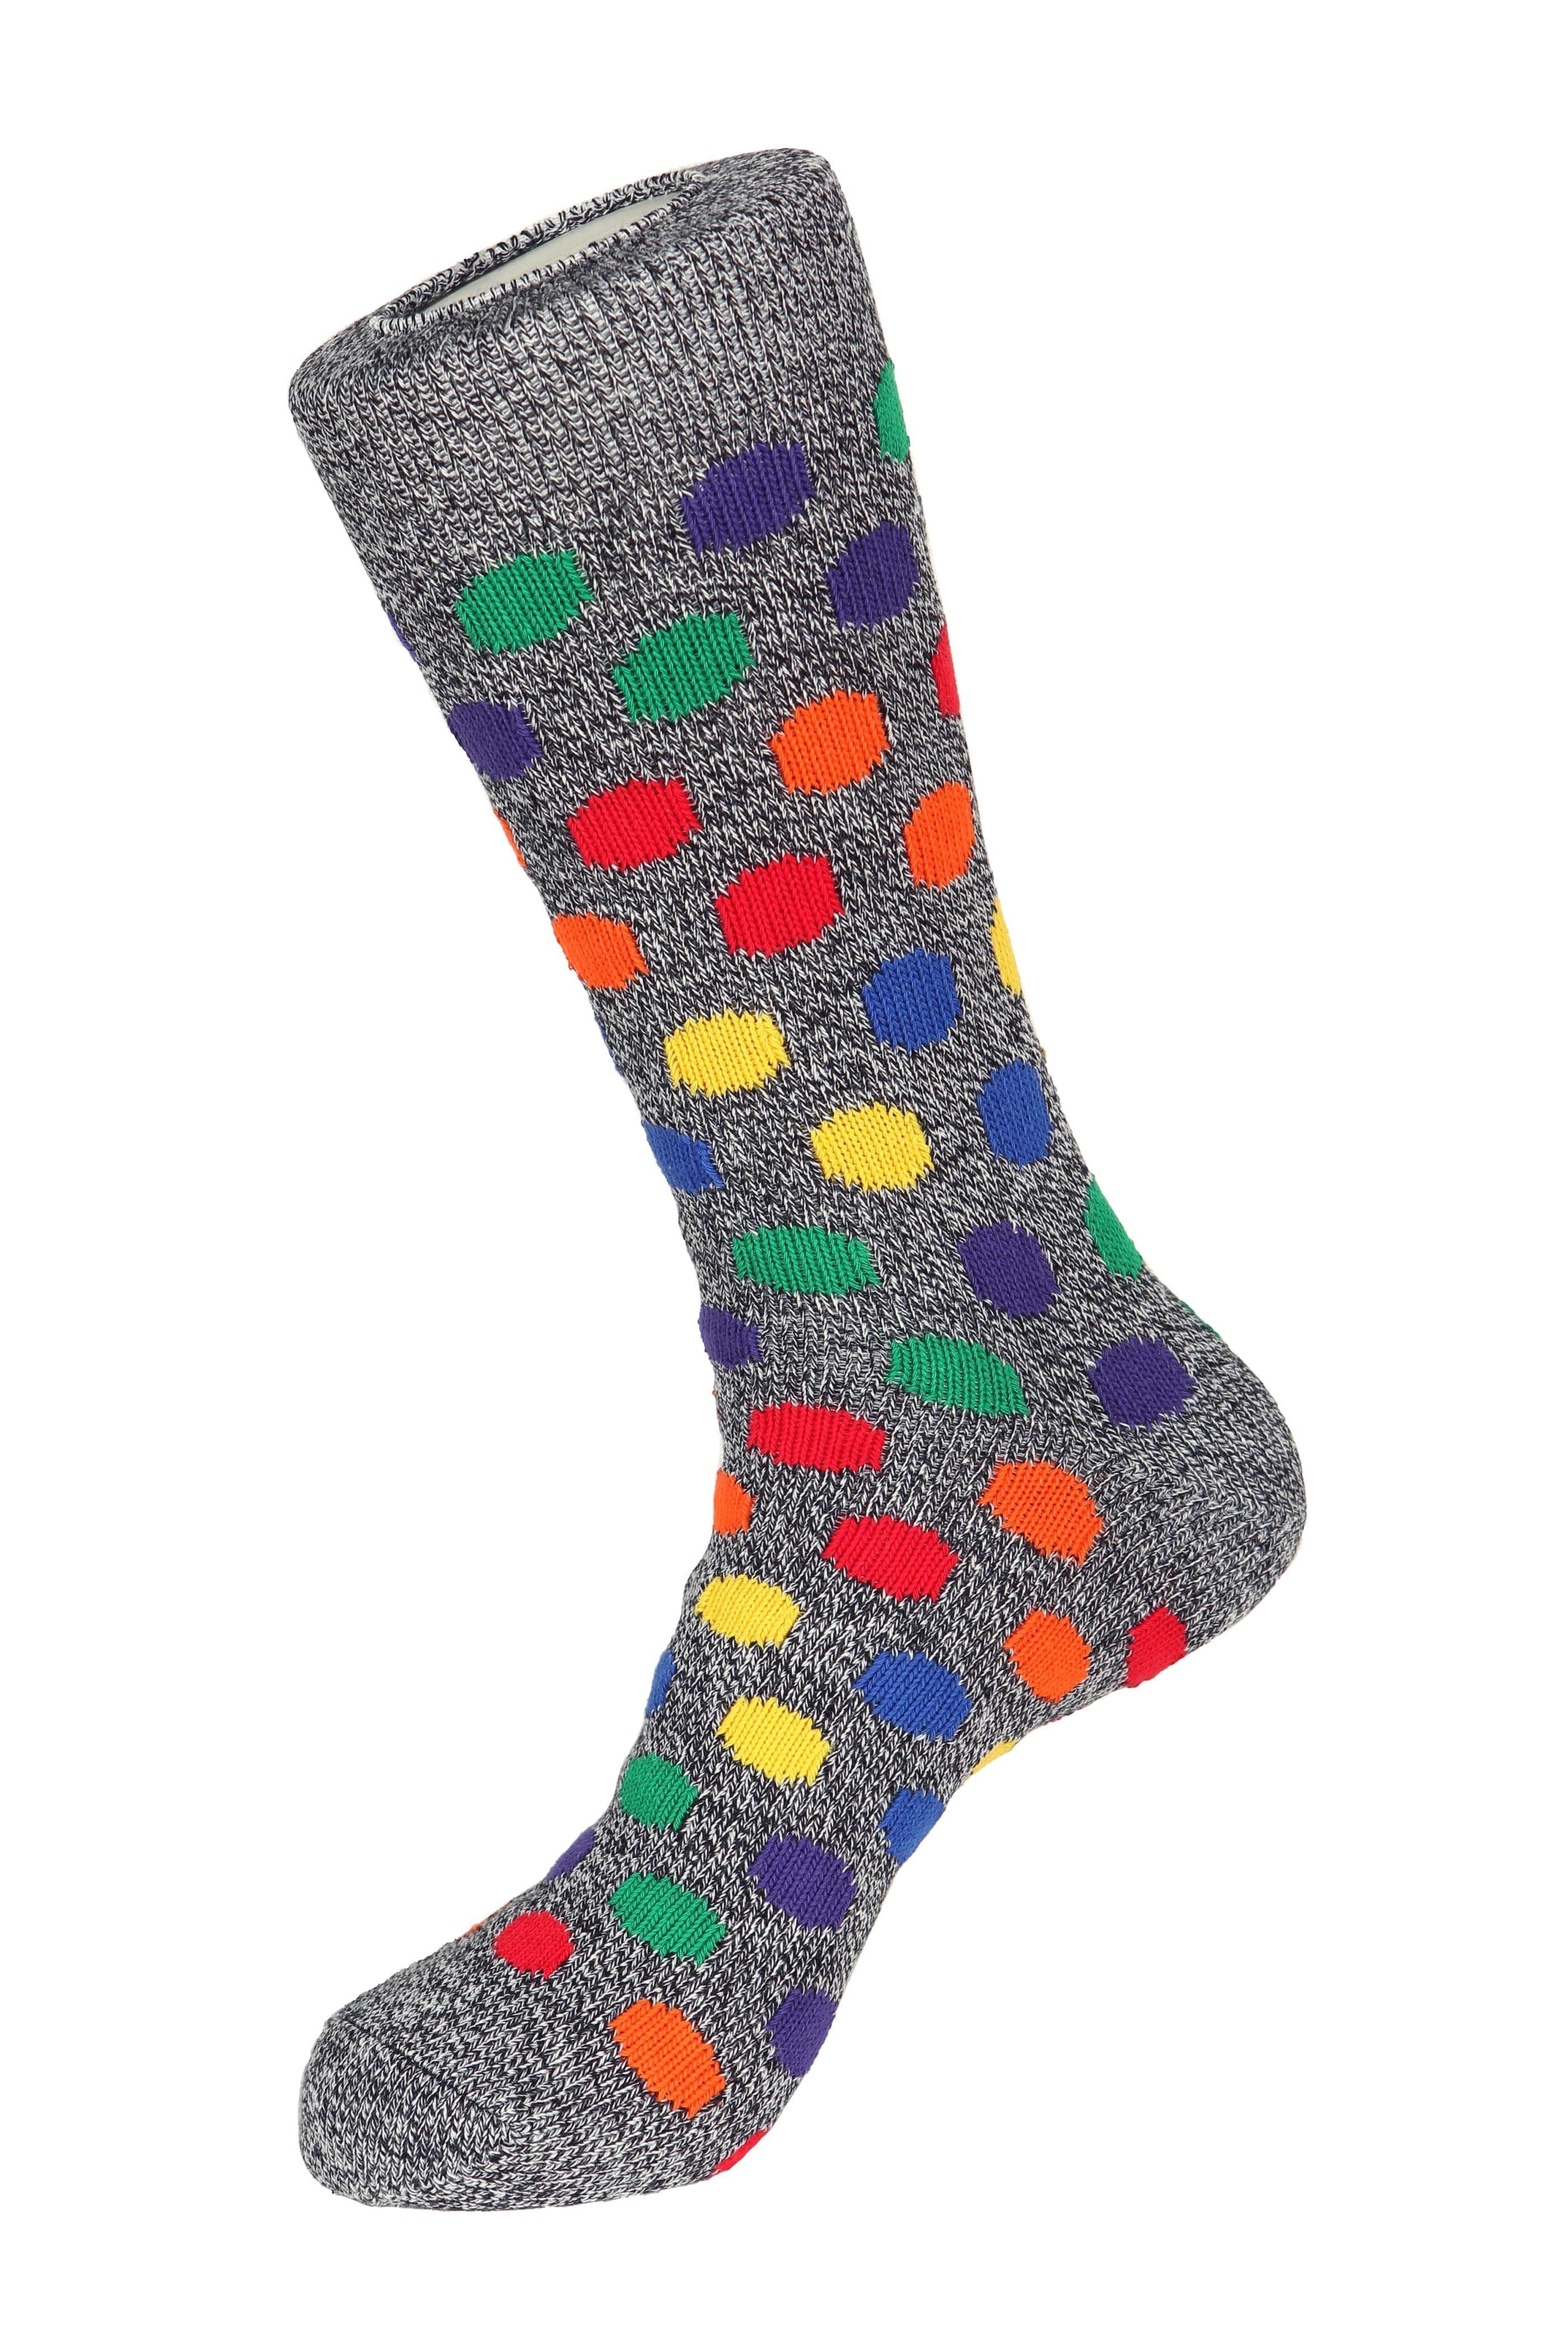 Big Polka Dot Socks - Men's Socks at Menzclub